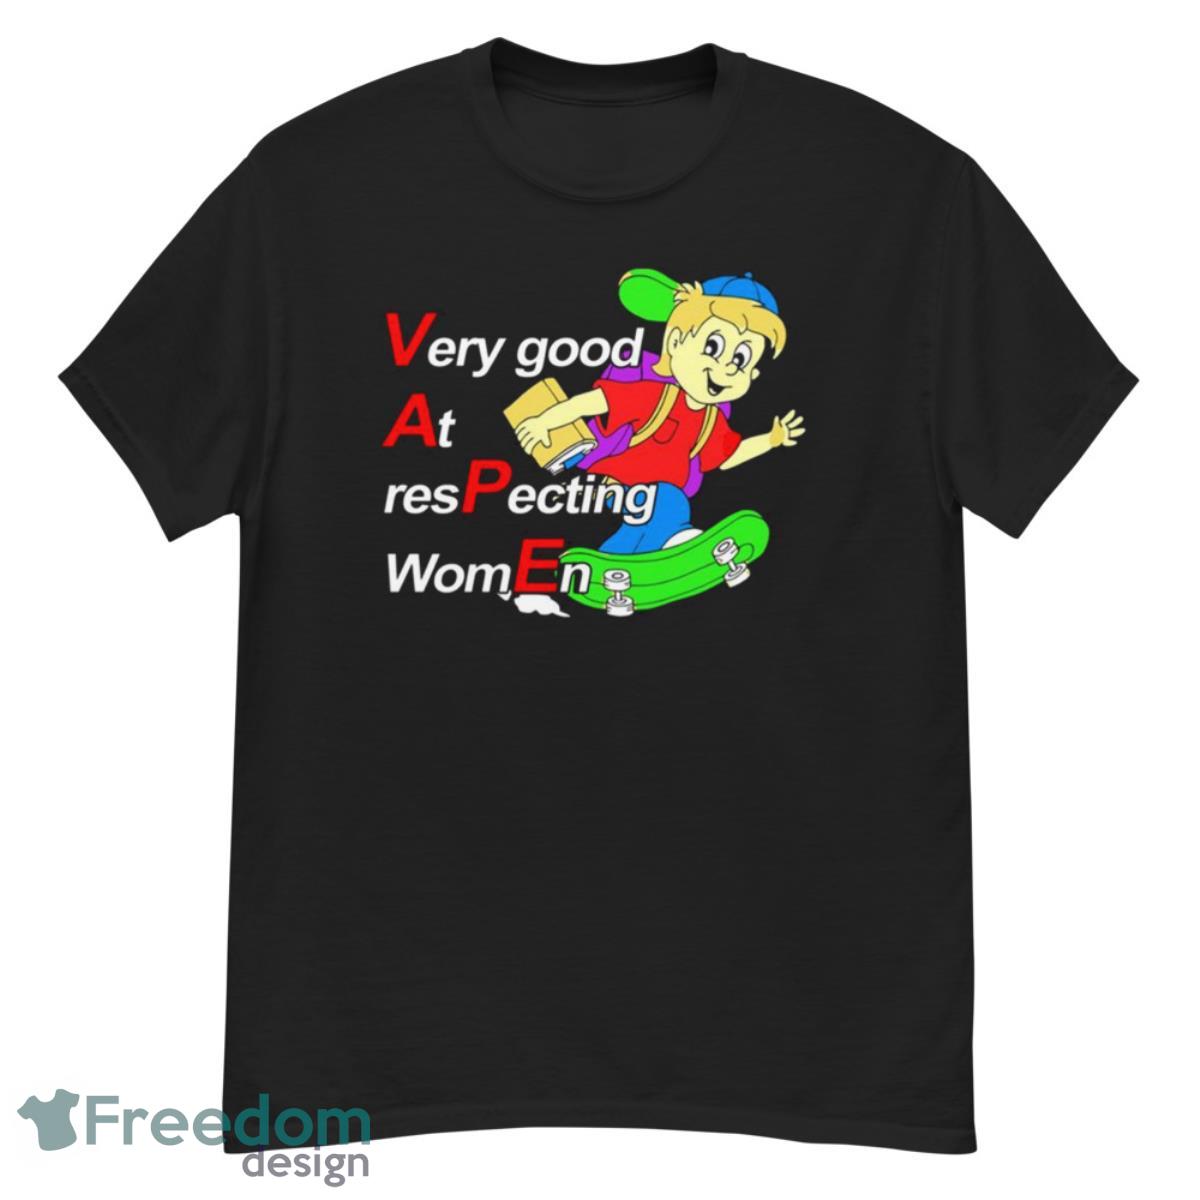 VAPE Very good at respecting women shirt - G500 Men’s Classic T-Shirt